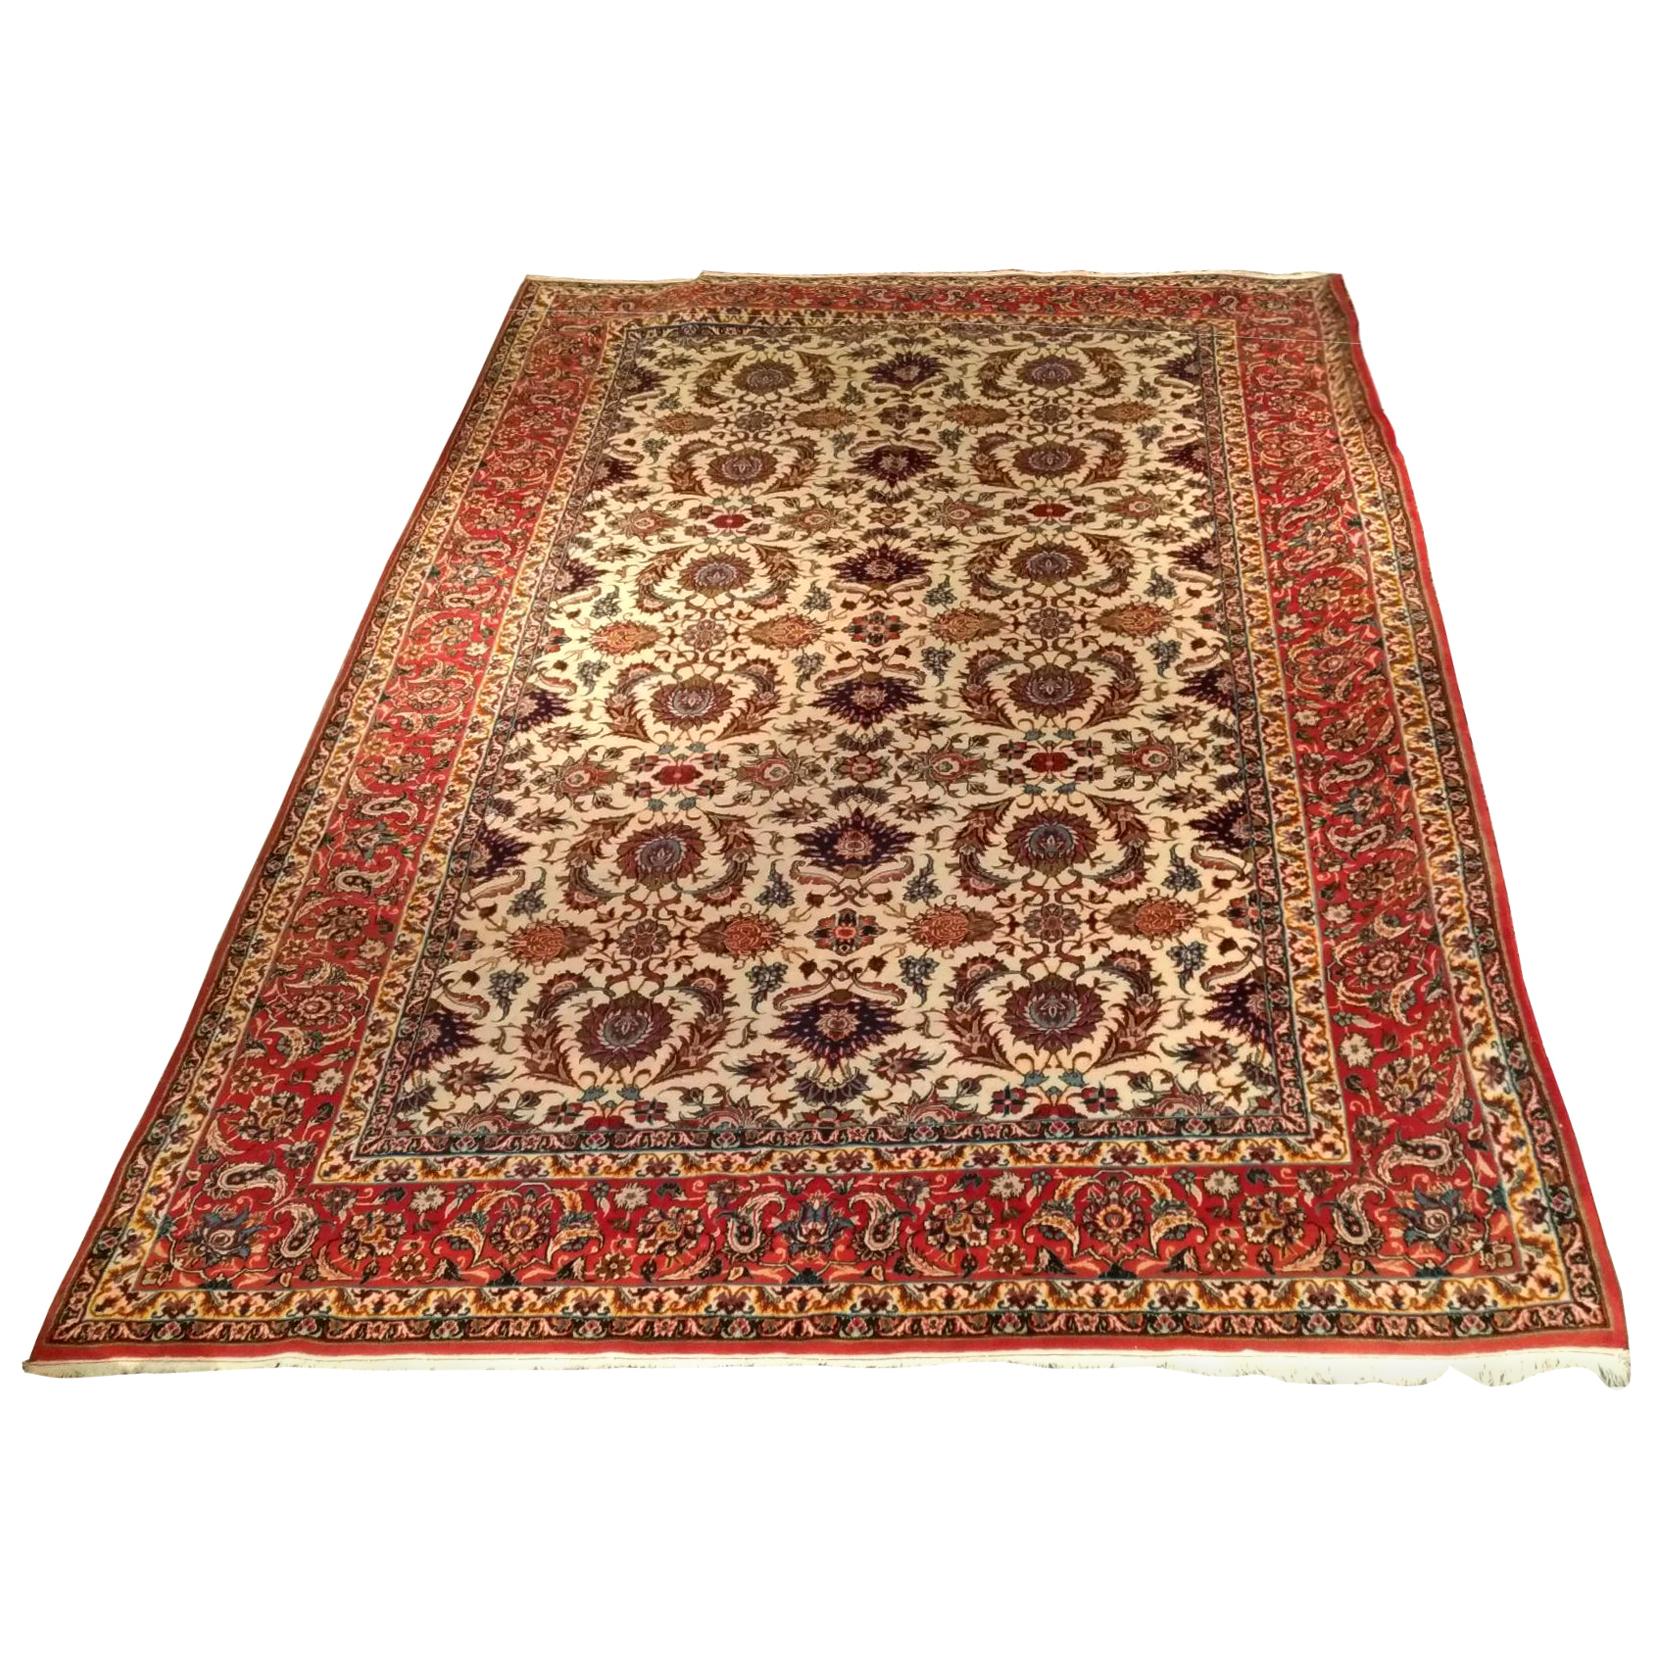 1018 - Schöner, sehr schöner, feiner Isfahan-Teppich, handgeknüpft